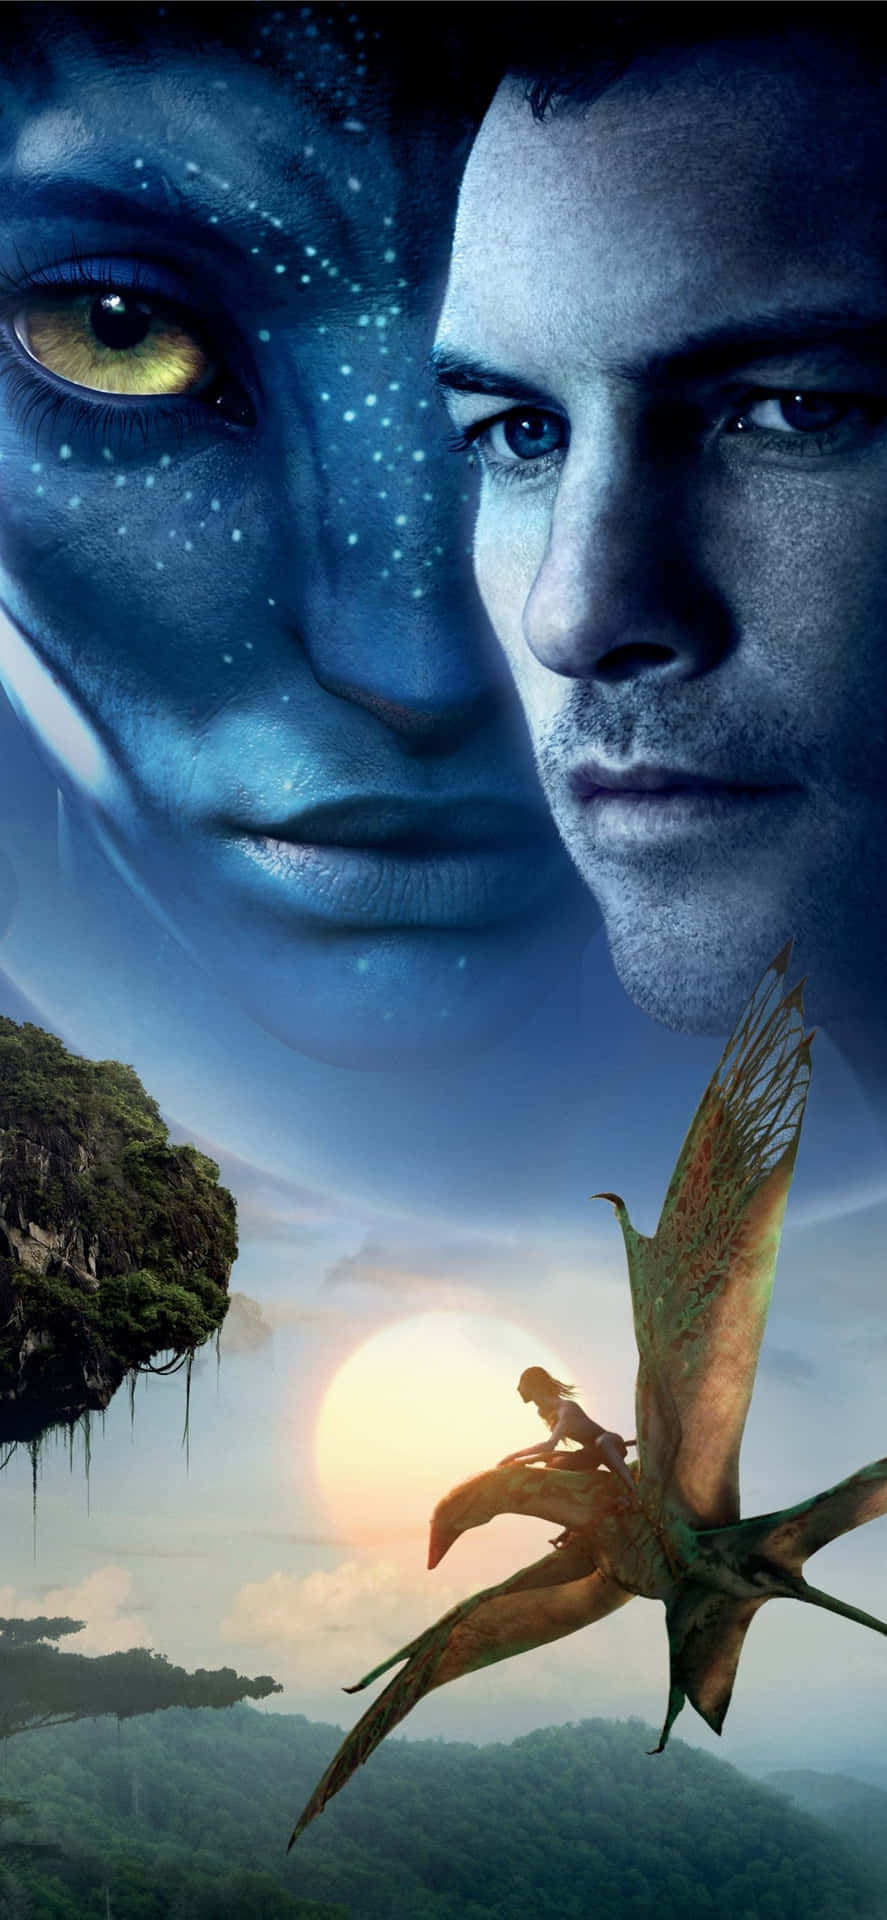 Avatar Movie Charactersand Scenery Wallpaper